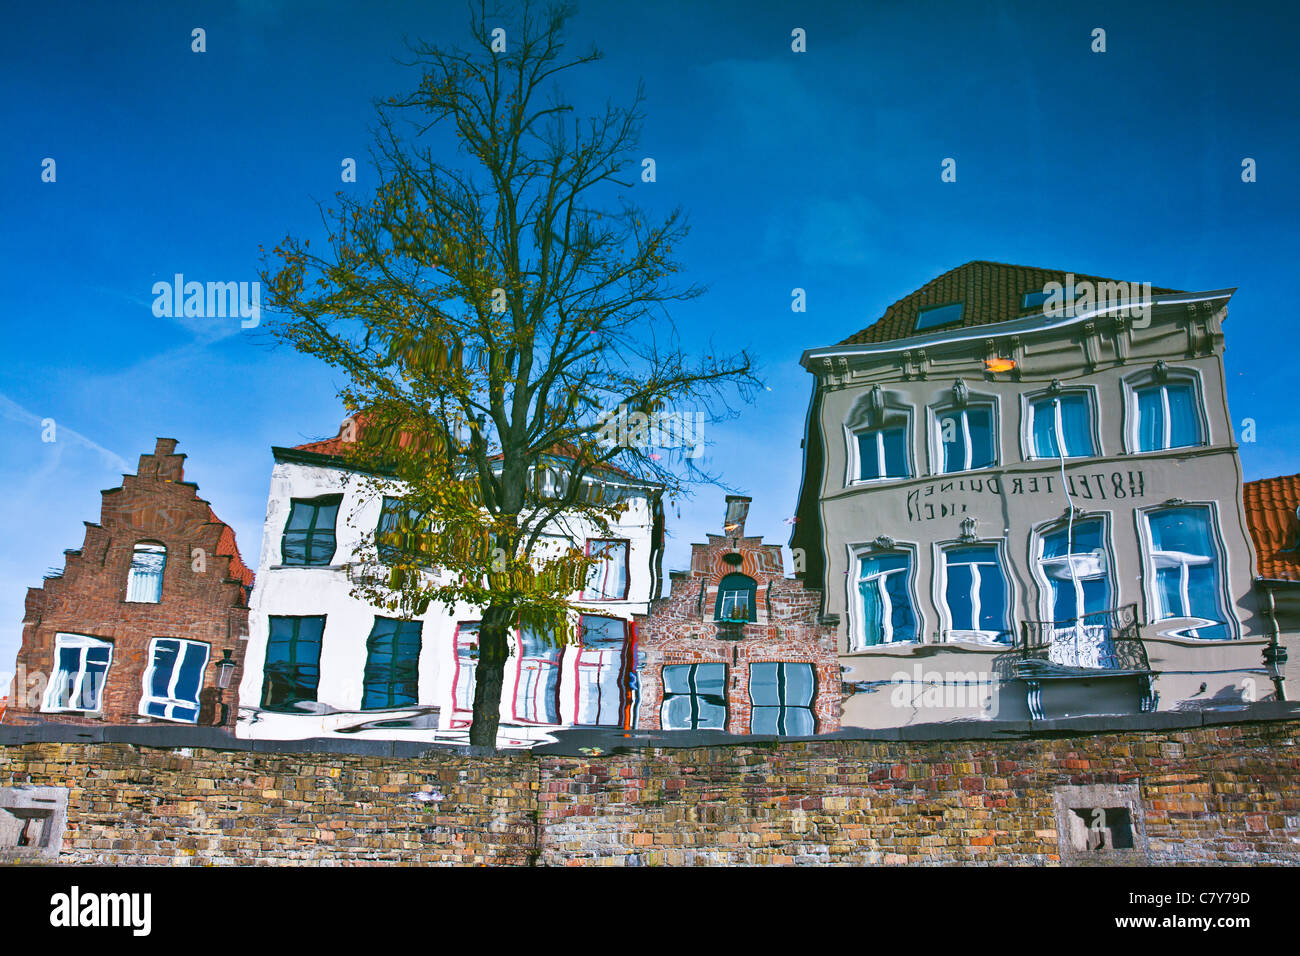 Reflexionen von typischen Häusern entlang des Kanals Langerei in Brugge (Brügge), Flandern, Belgien. Bild wurde invertiert. Stockfoto